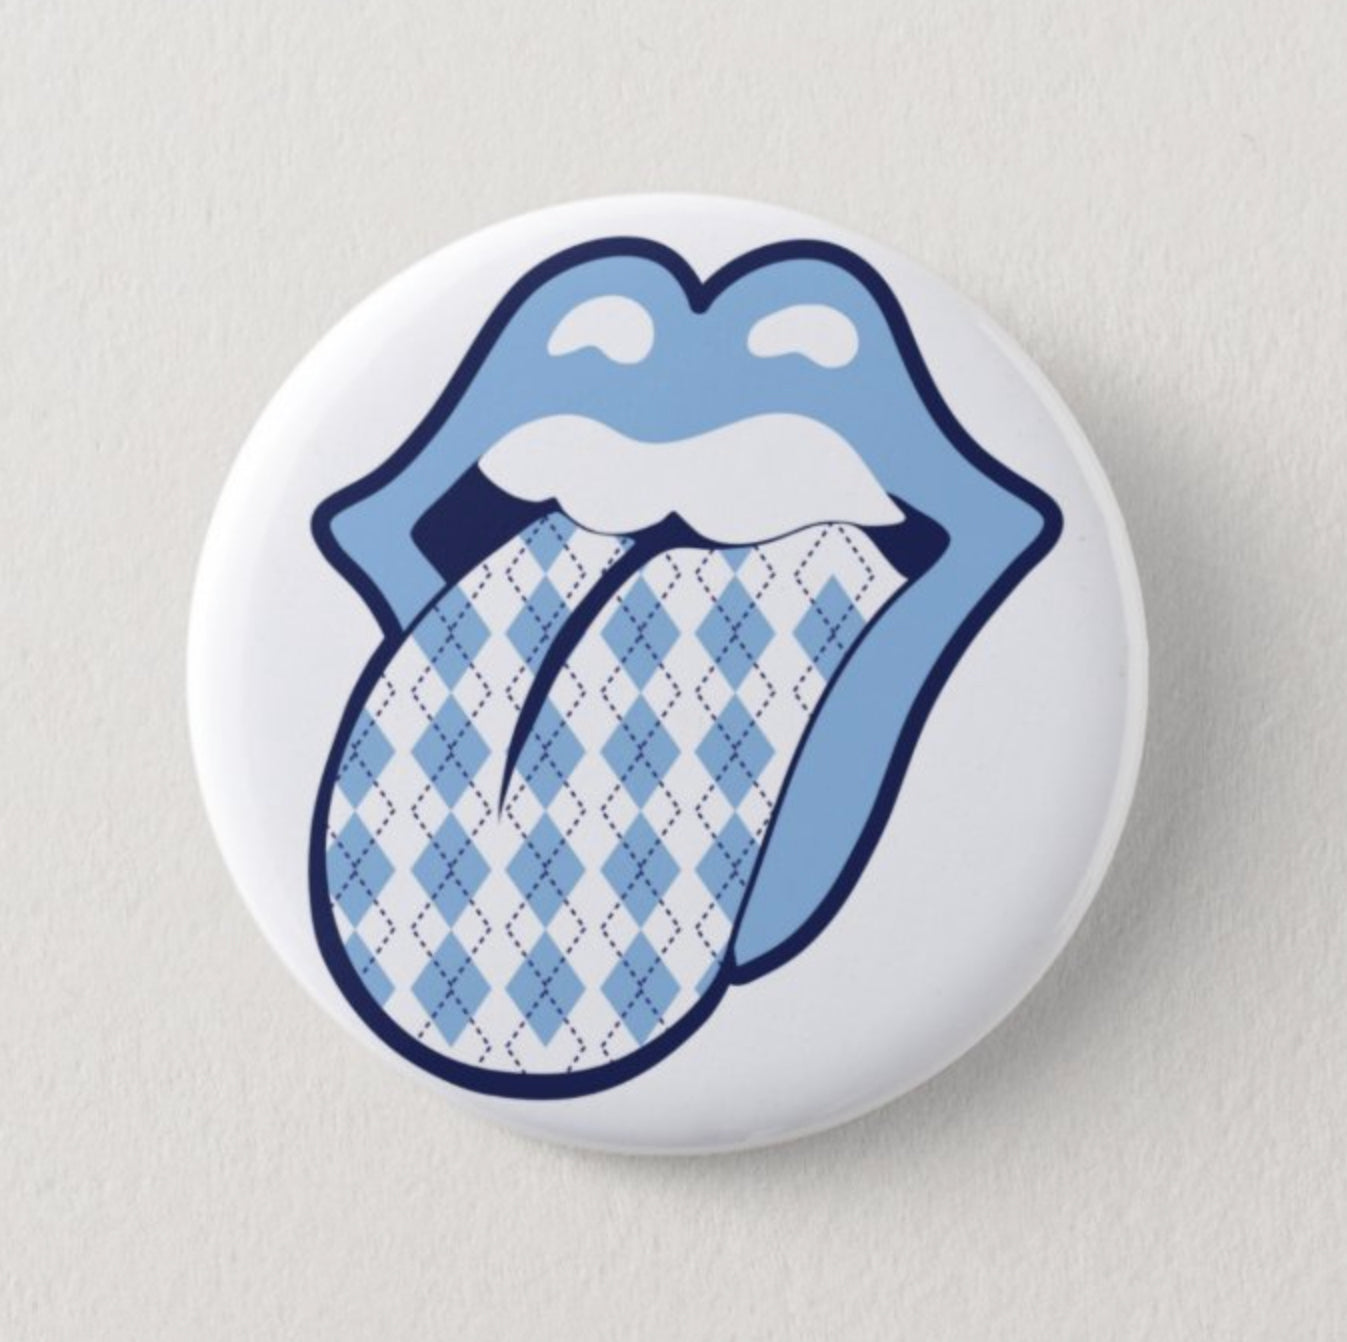 Argyle Carolina Tongue Button Pin by Shrunken Head Brand